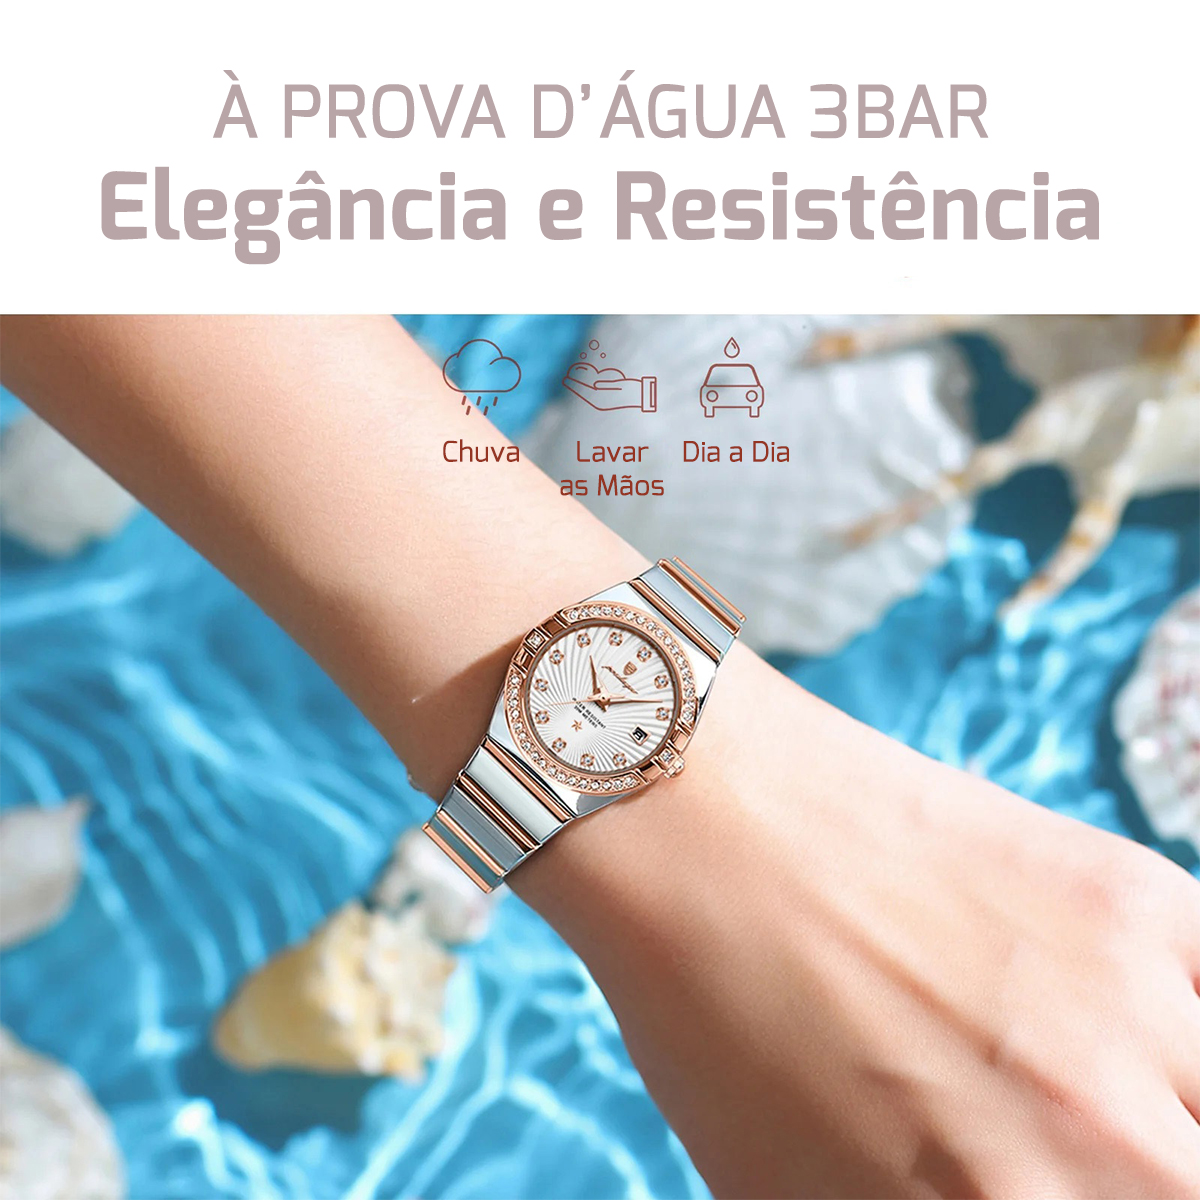 Relógio Feminino À Prova D'Água, resistência a água, Qualidade e Durabilidade, Traços Marcantes, Relógio Feminino Clássico